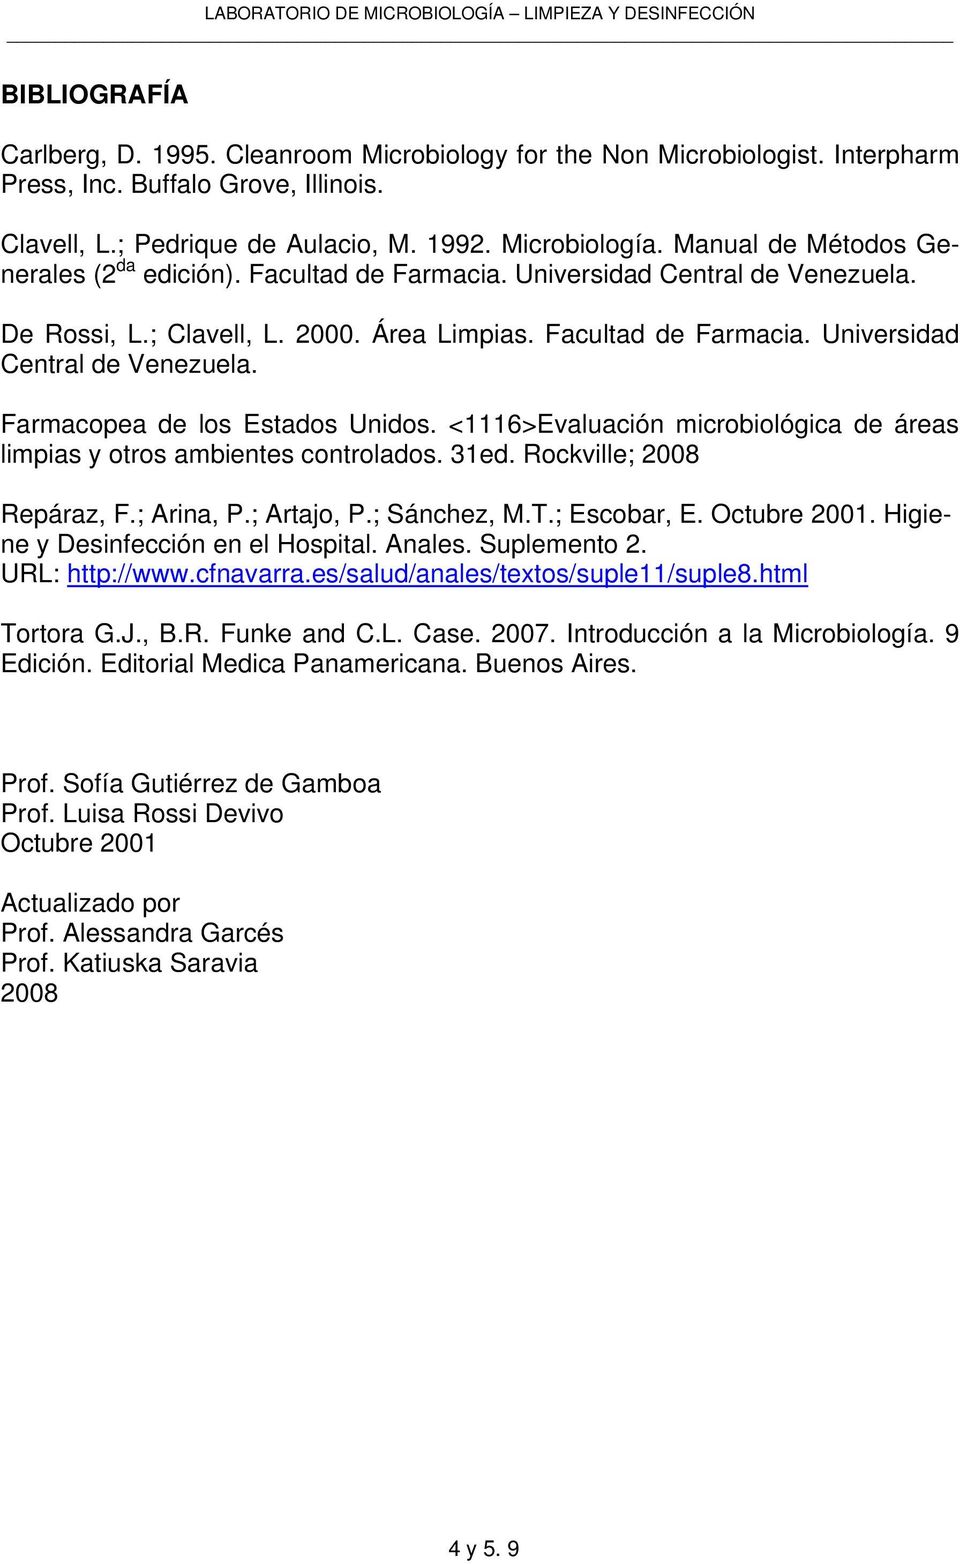 <1116>Evaluación microbiológica de áreas limpias y otros ambientes controlados. 31ed. Rockville; 2008 Repáraz, F.; Arina, P.; Artajo, P.; Sánchez, M.T.; Escobar, E. Octubre 2001.